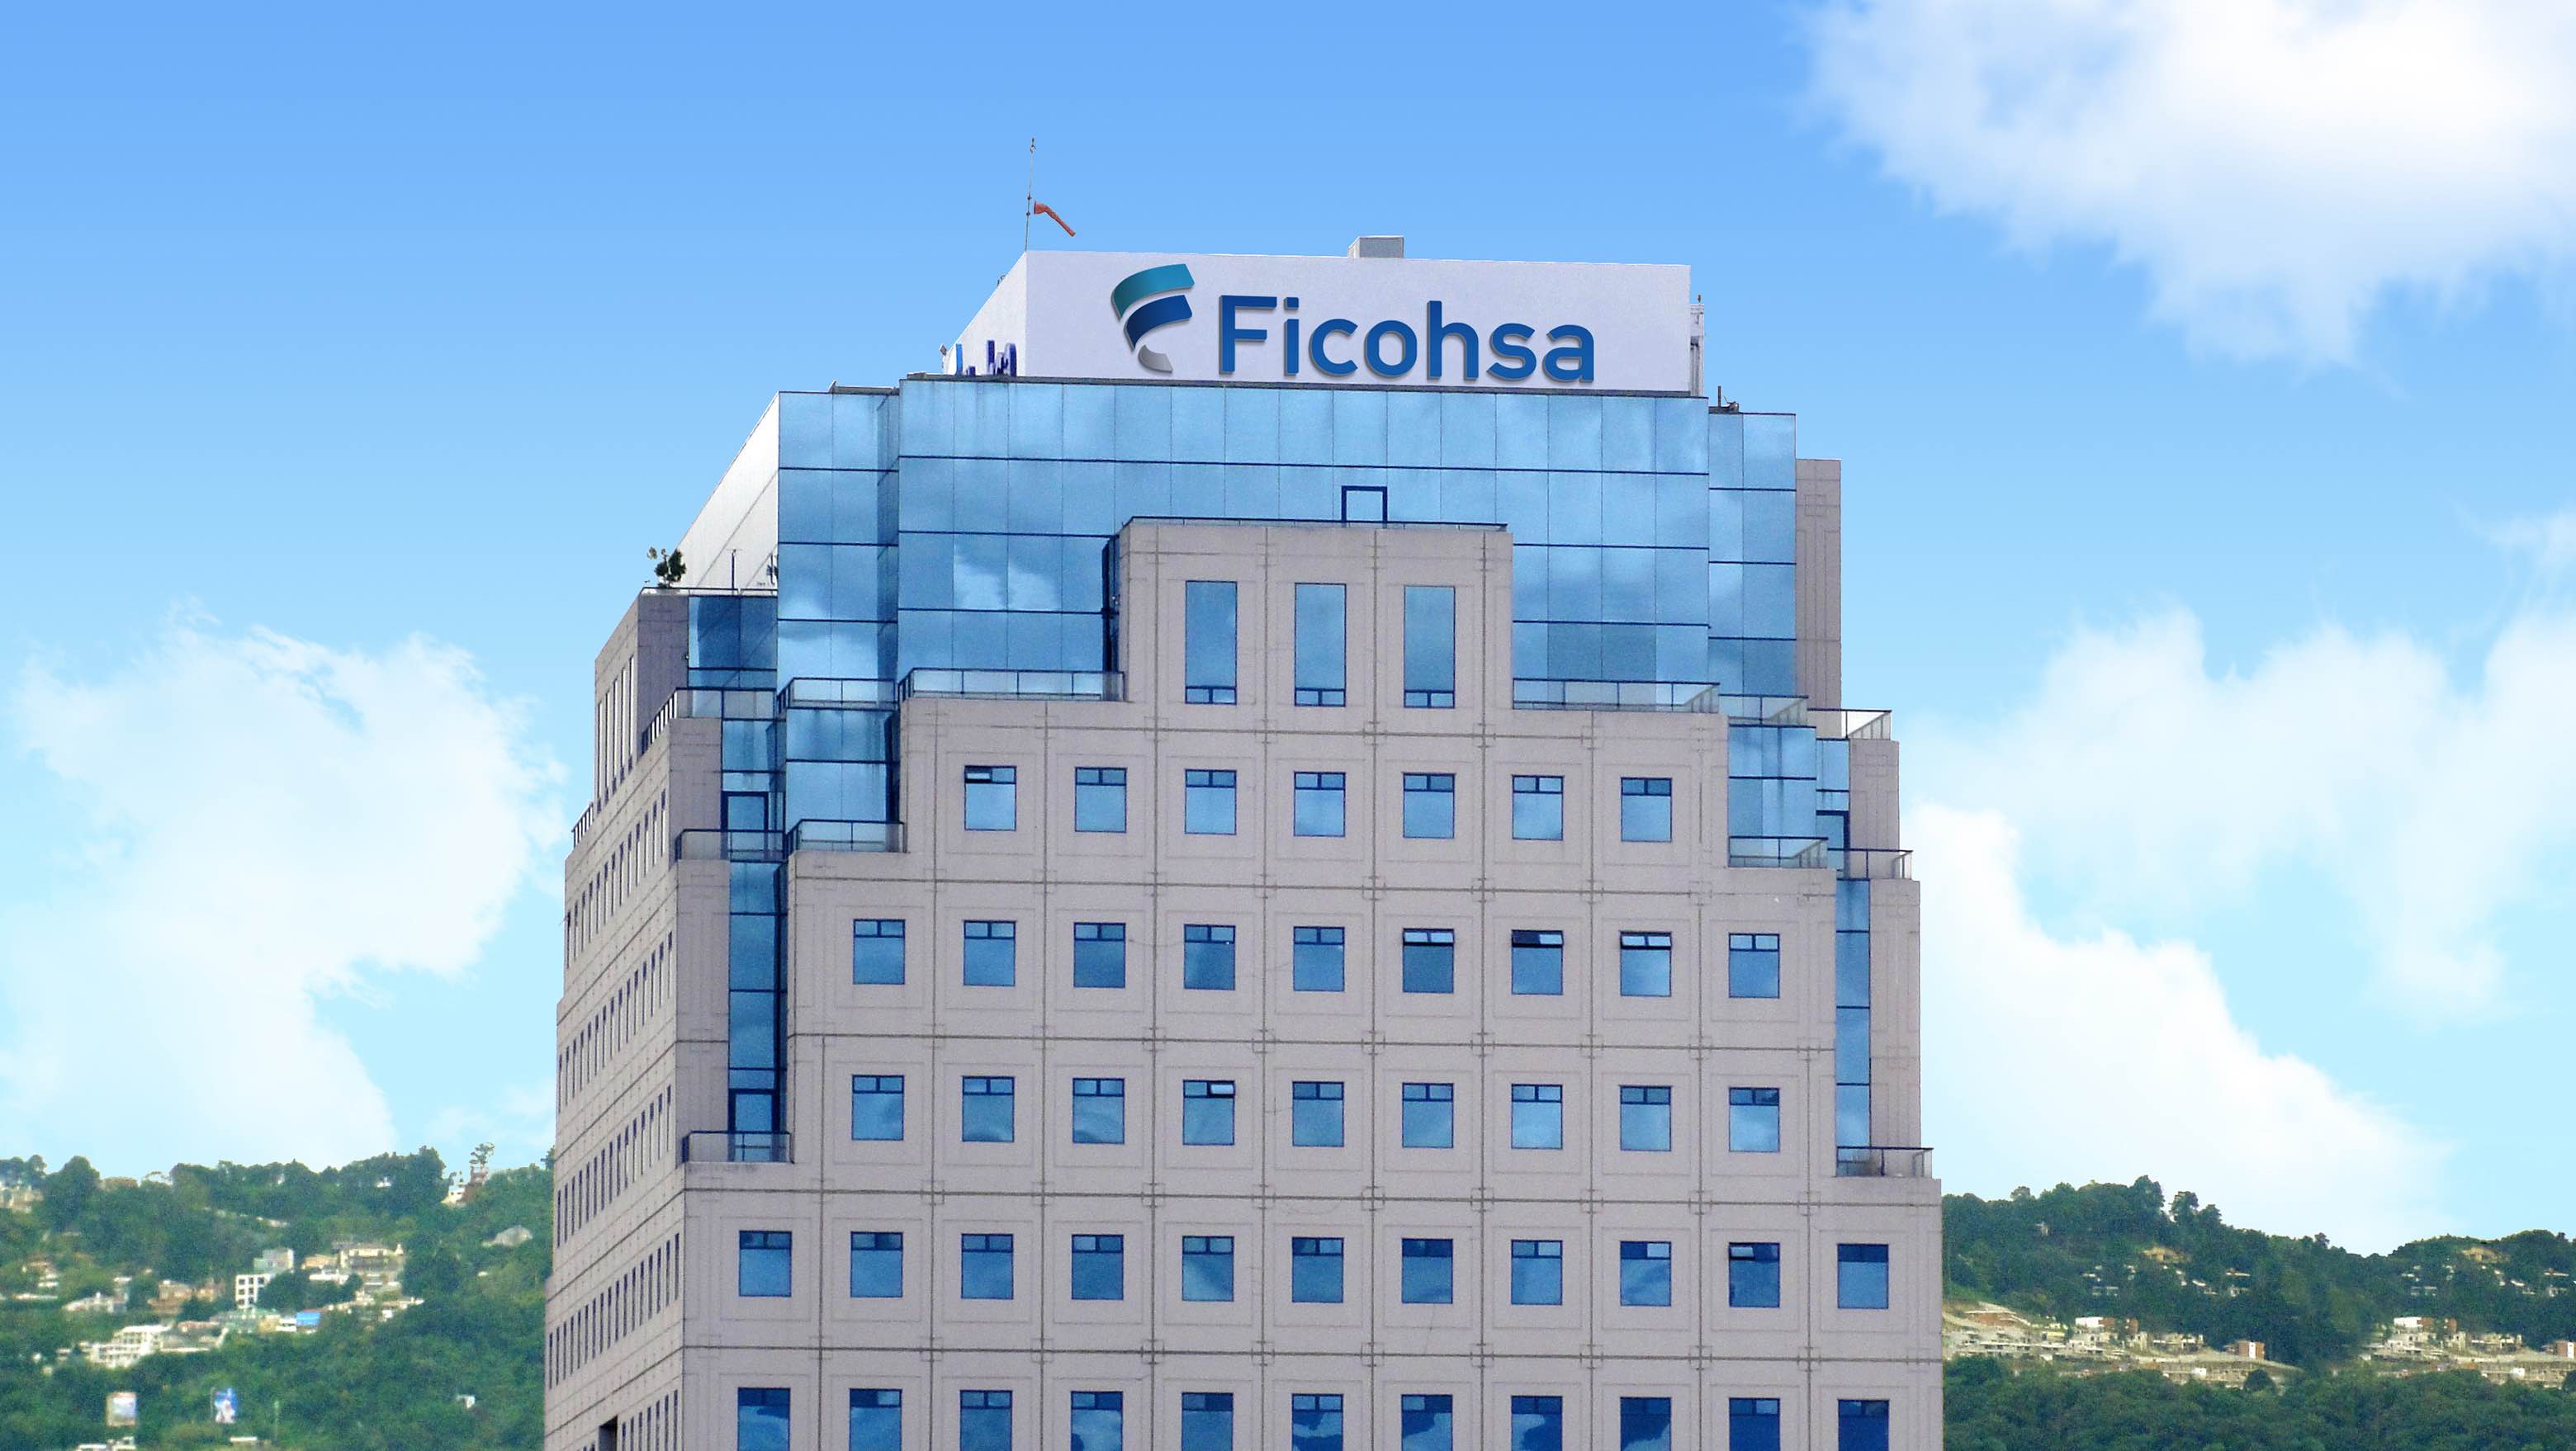 Ficohsa asume operaciones de Citi en Nicaragua